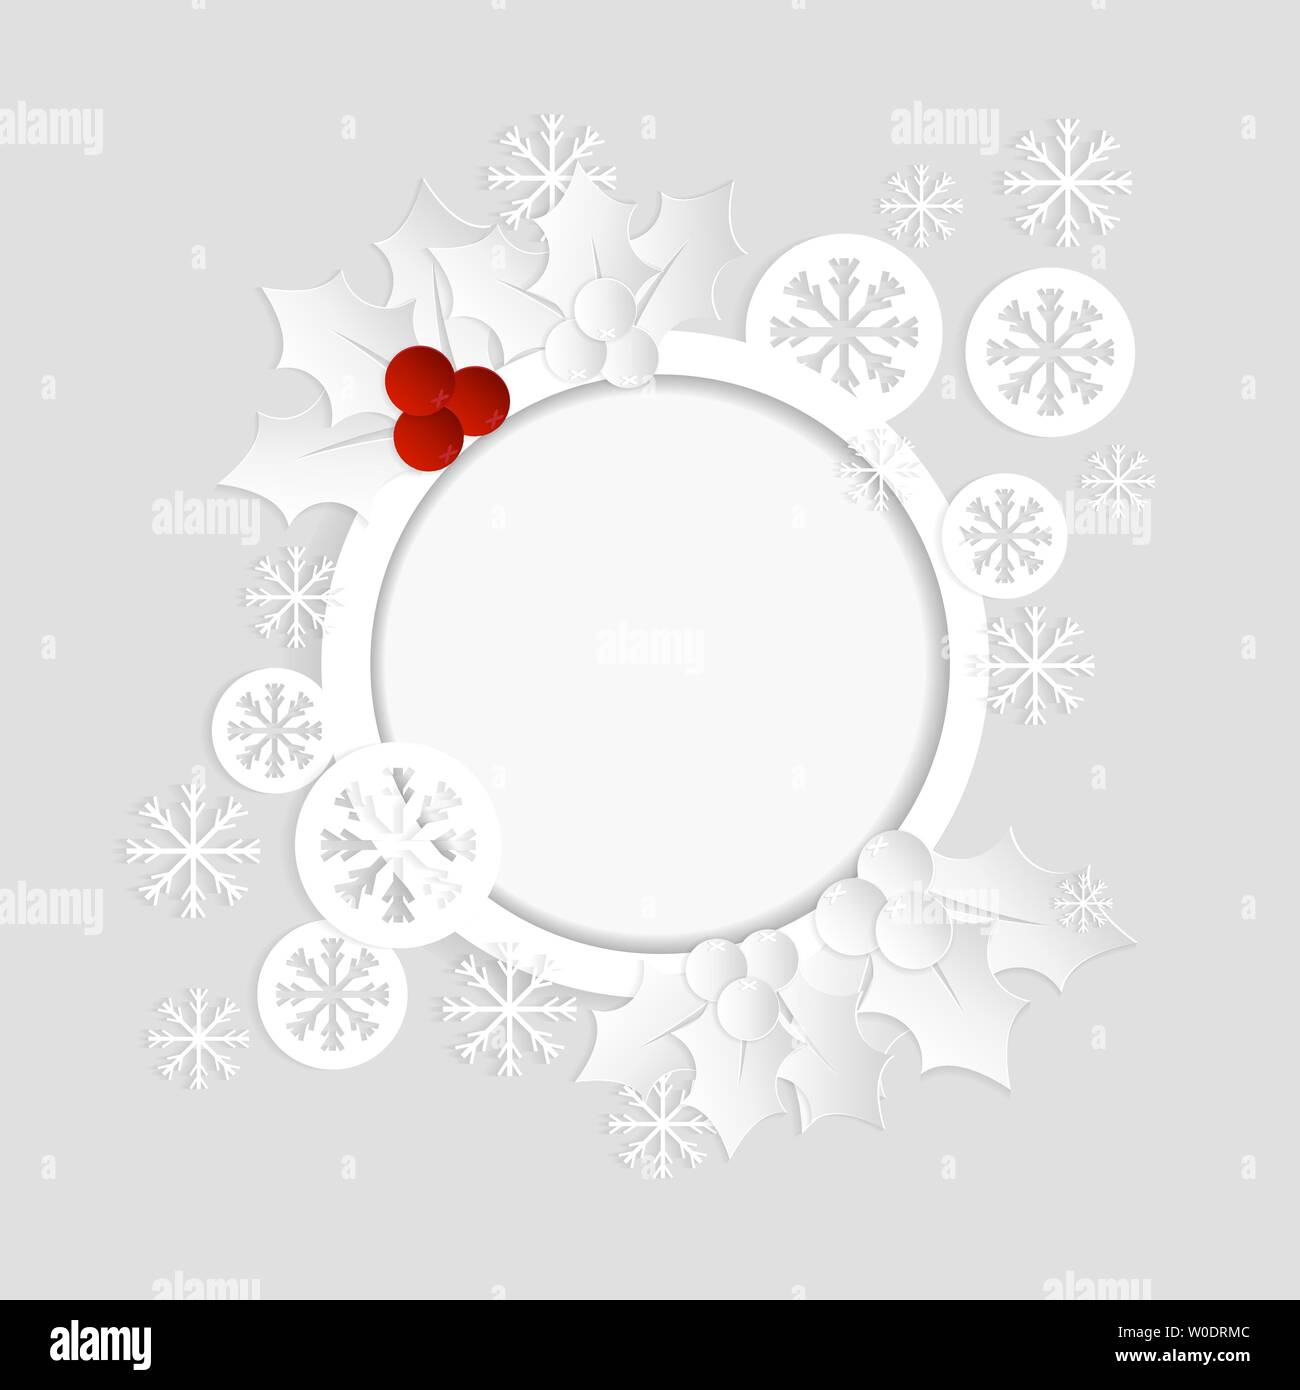 Weihnachtskarte mit Stechpalme und Schneeflocken Papier Vorlage Vektor Stock Vektor